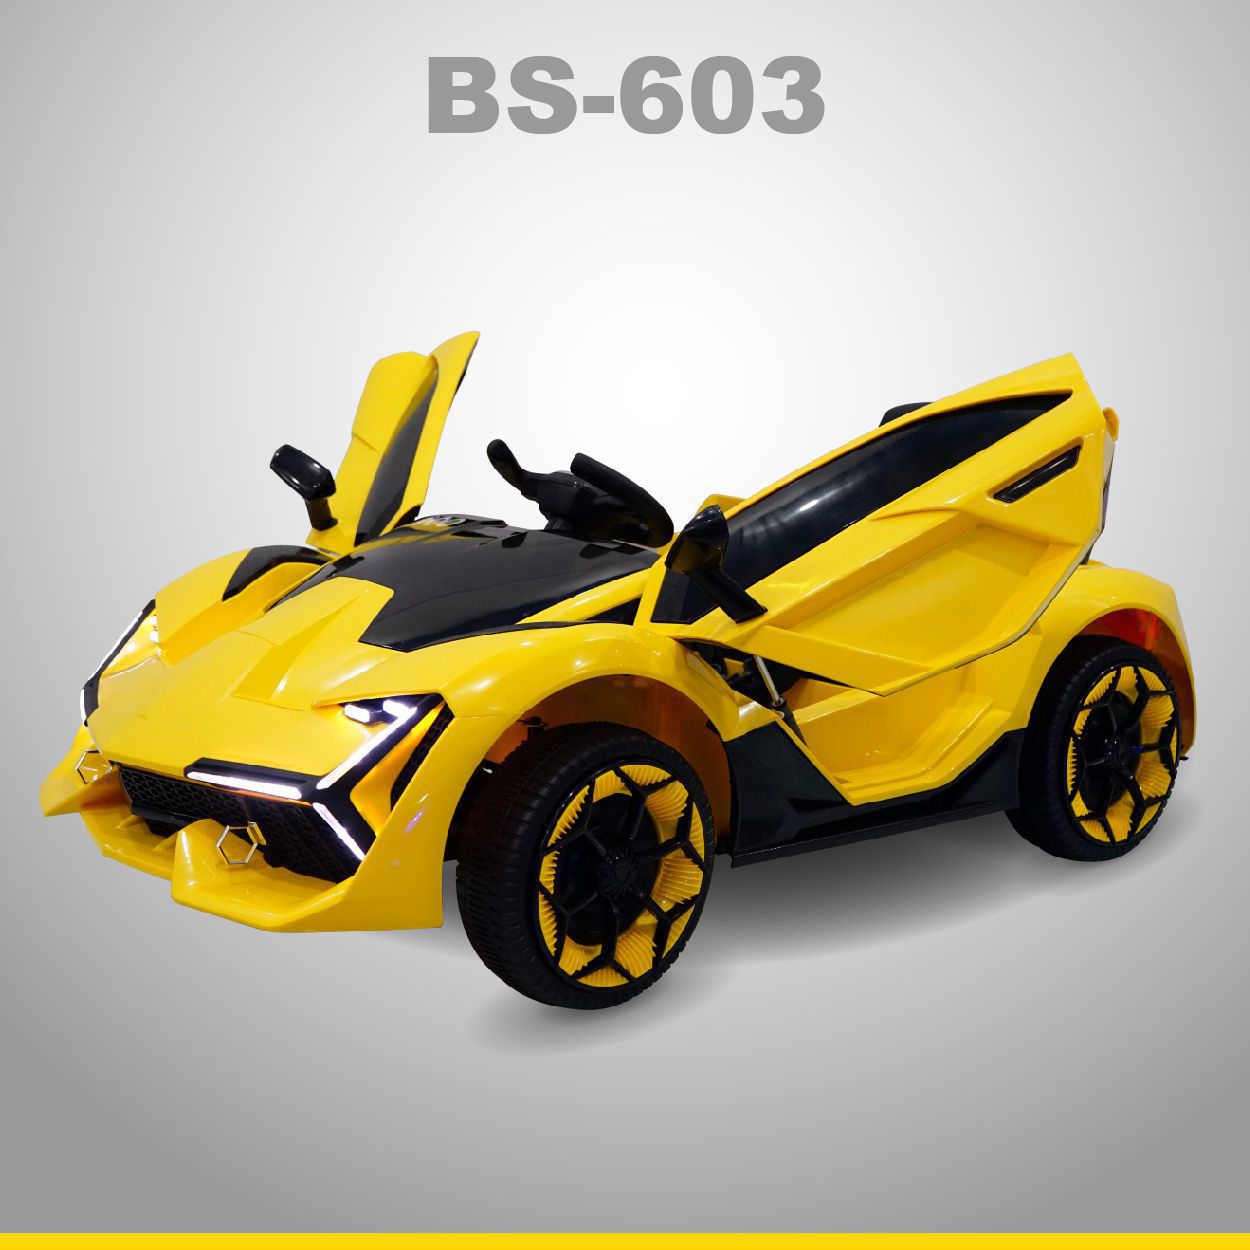 BS 603 o to dien vang maket 02 - Xe ô tô điện BS-603 - Vàng